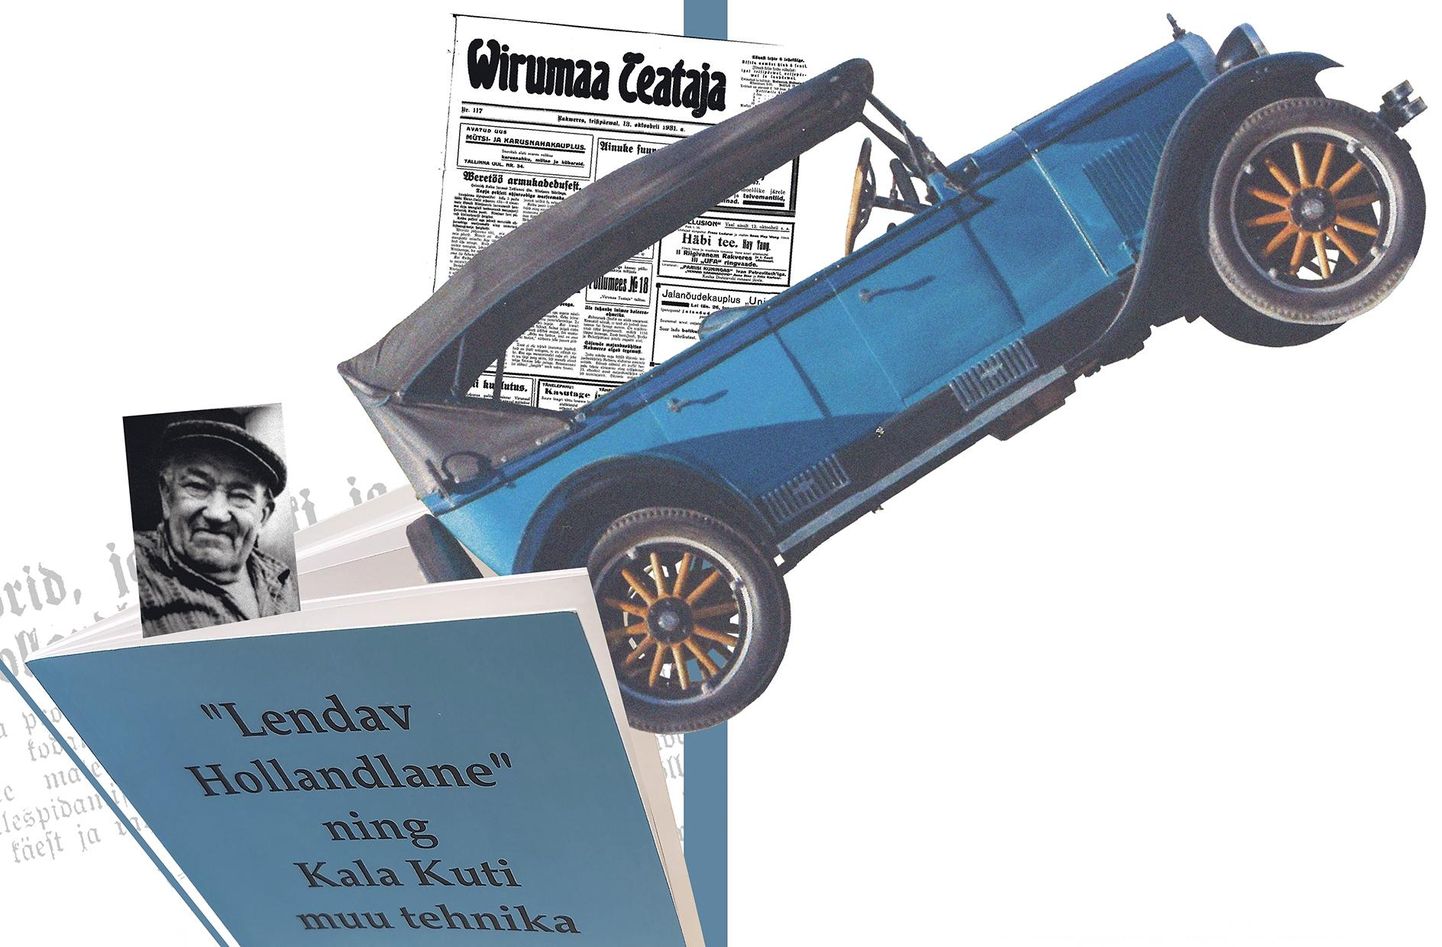 1927. aasta Chevrolet Capitol Laitse Rallipargi kogus. Selline võis välja näha “Lendav Hollandlane” enne oma kuulsusrikast elu Virumaa Teedel.